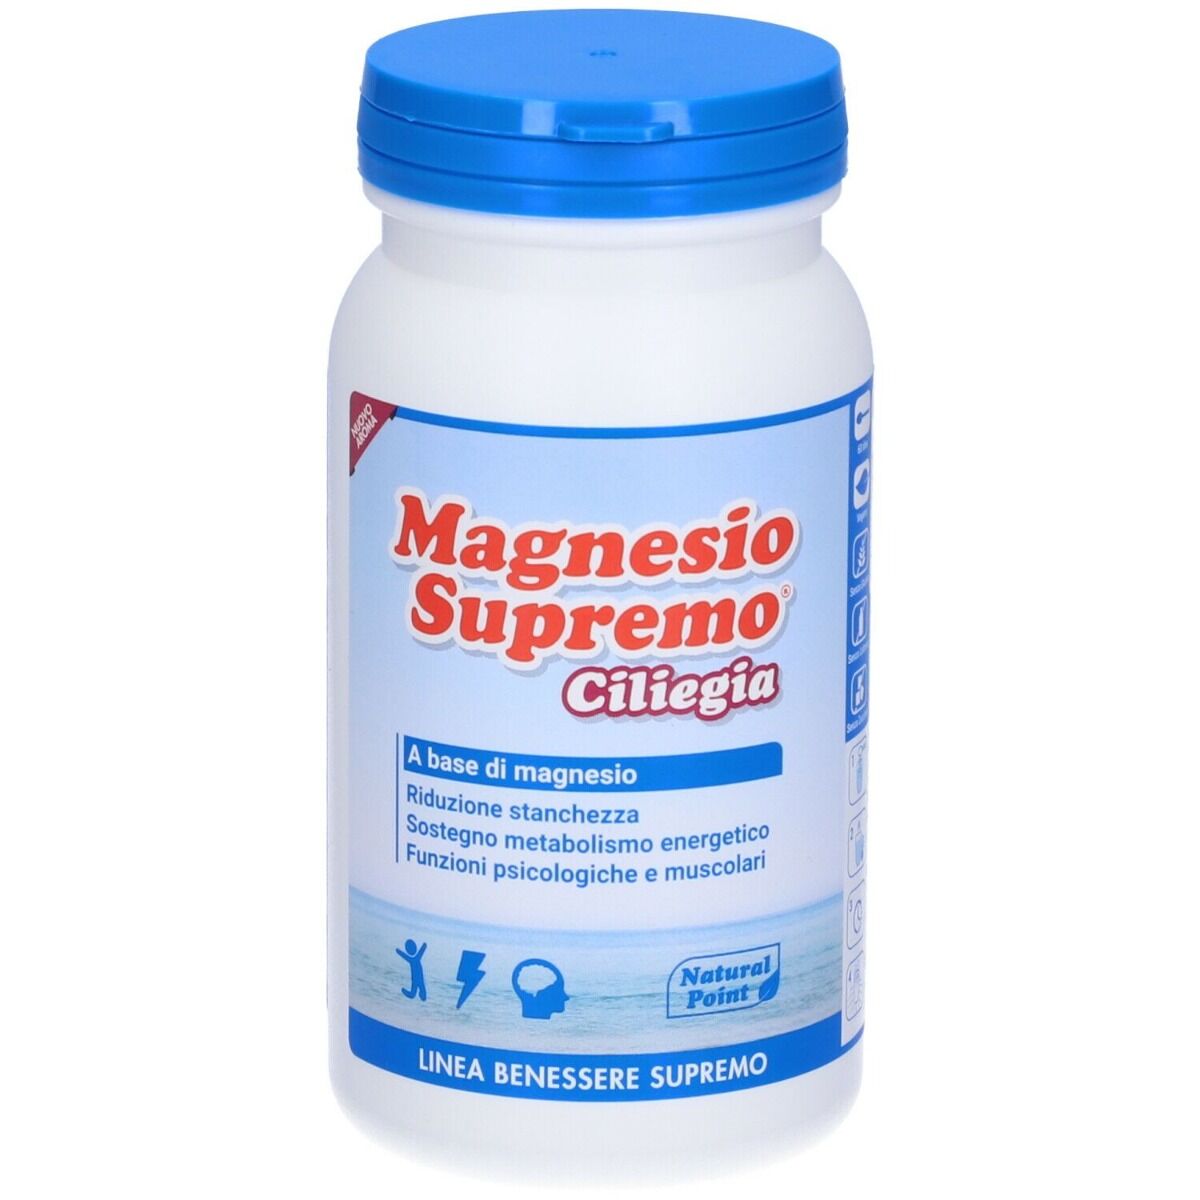 NATURAL POINT Magnesio Supremo Integratore Gusto Ciliegia 150 g